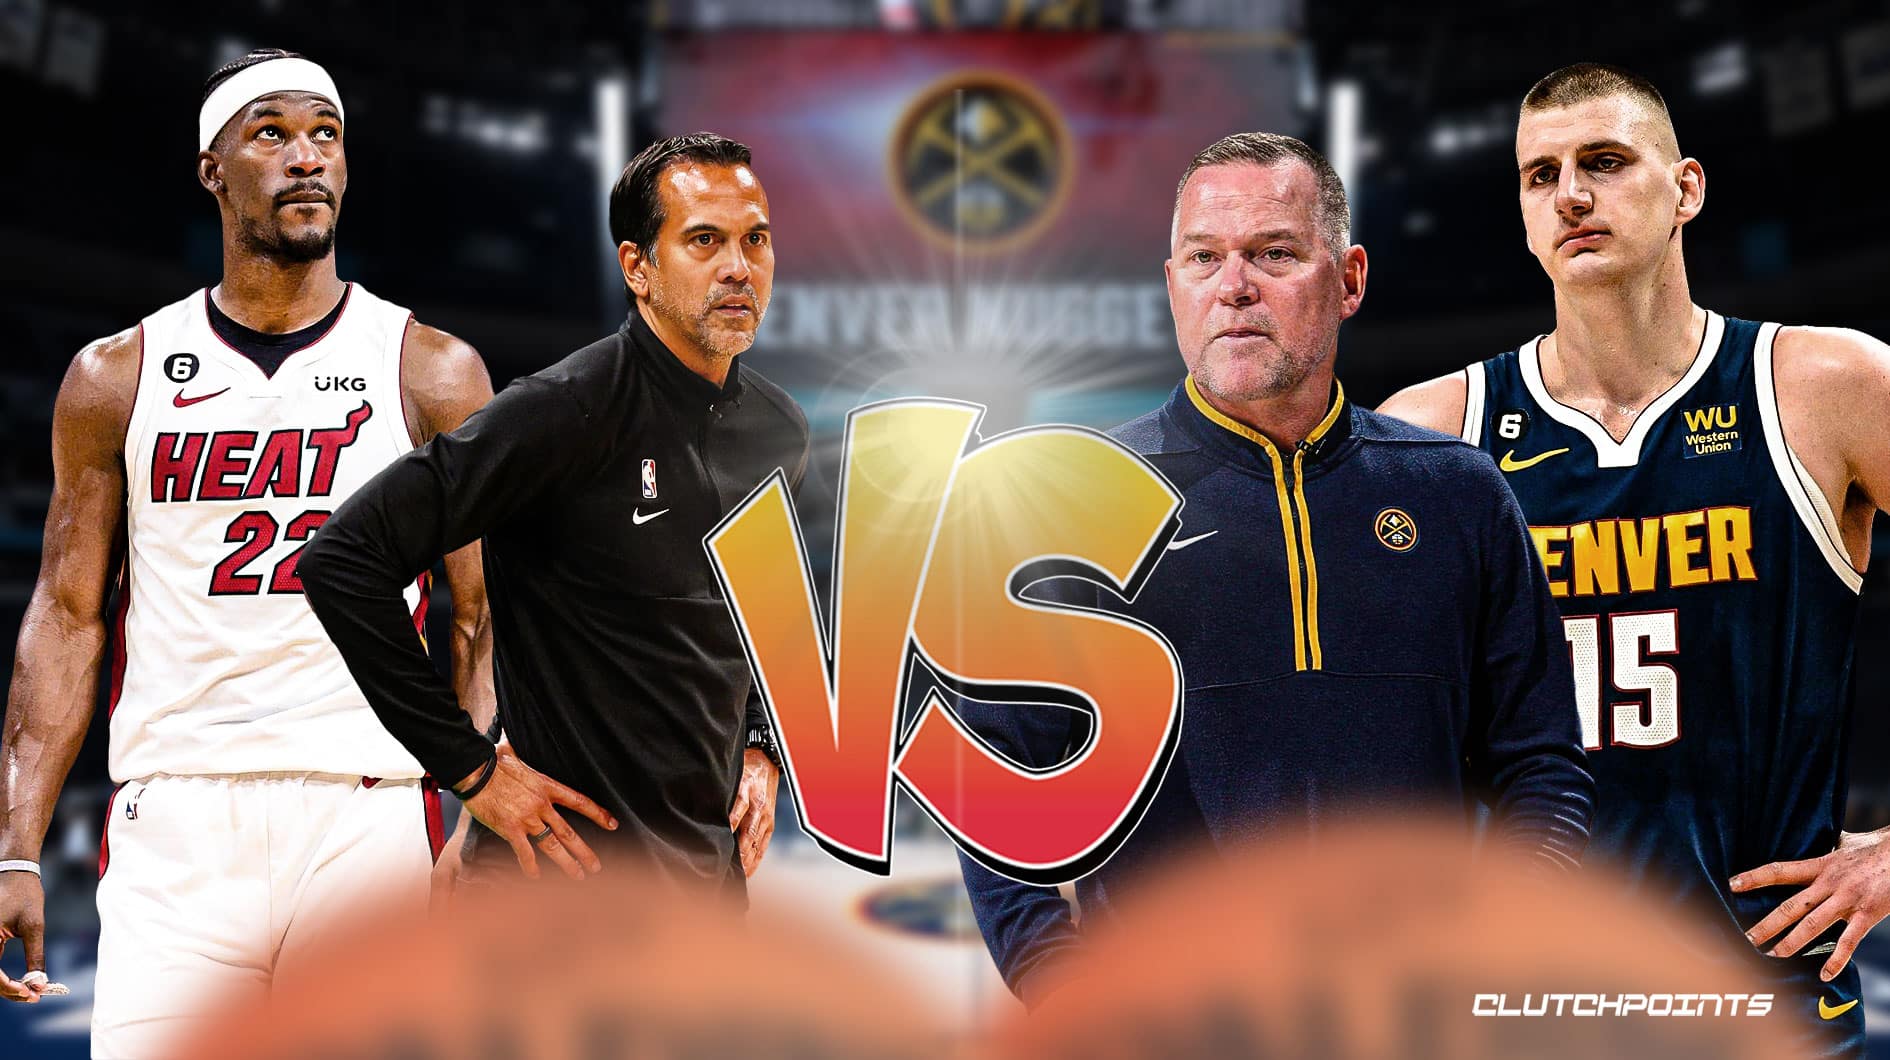 Heat: NBA Finals Game 1 vs. Nuggets predictions